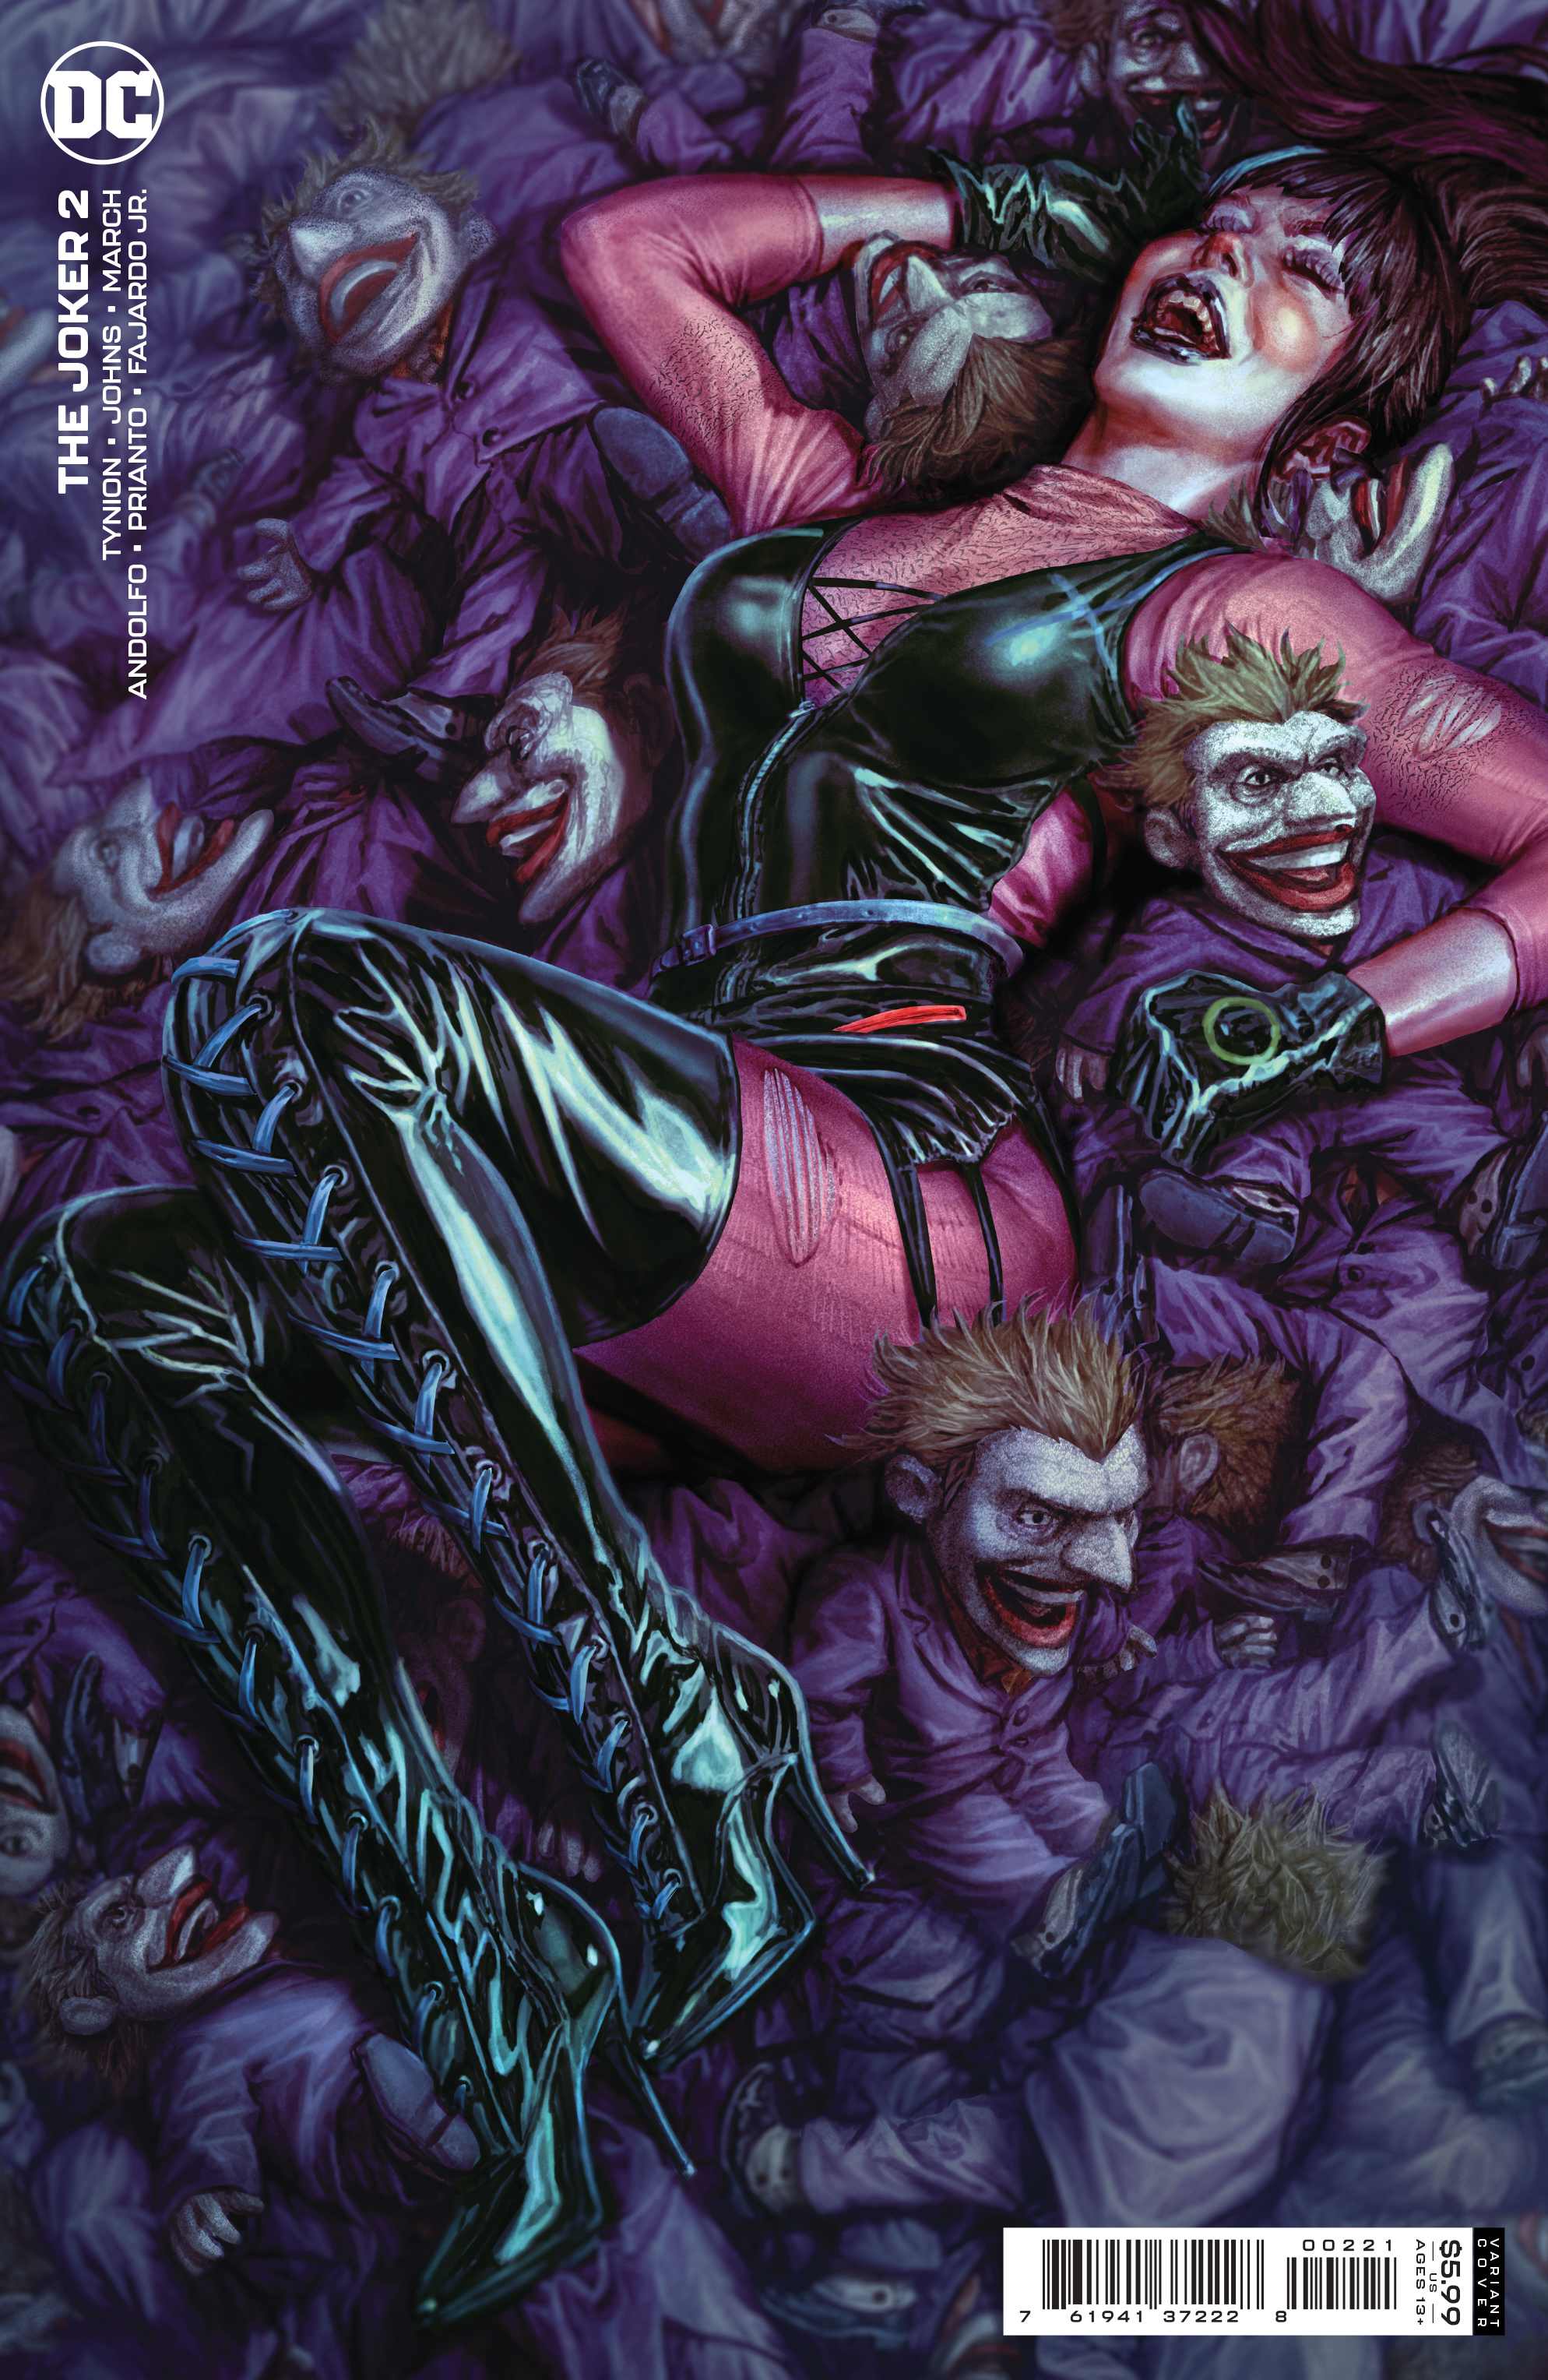 Joker #2 Cover B Lee Bermejo Variant